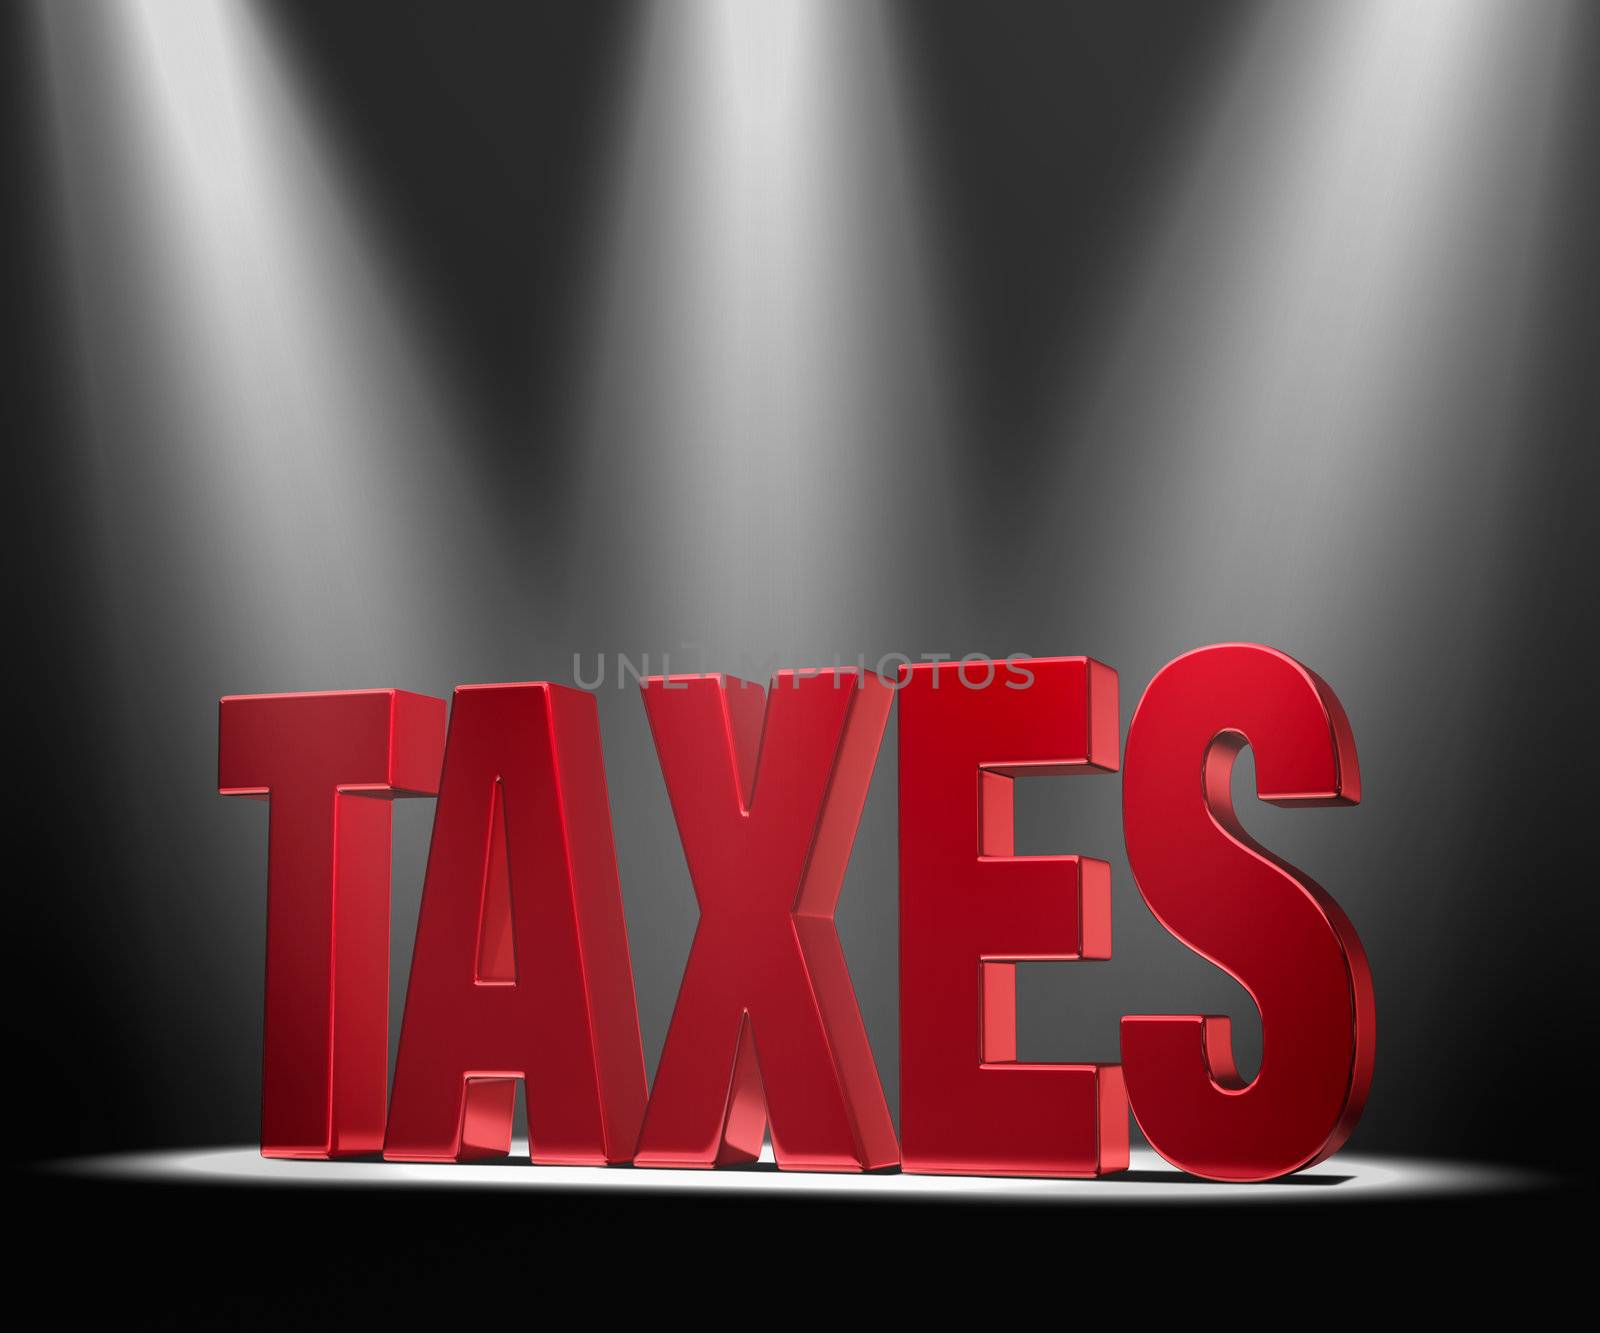 Spotlight On Taxes by Em3